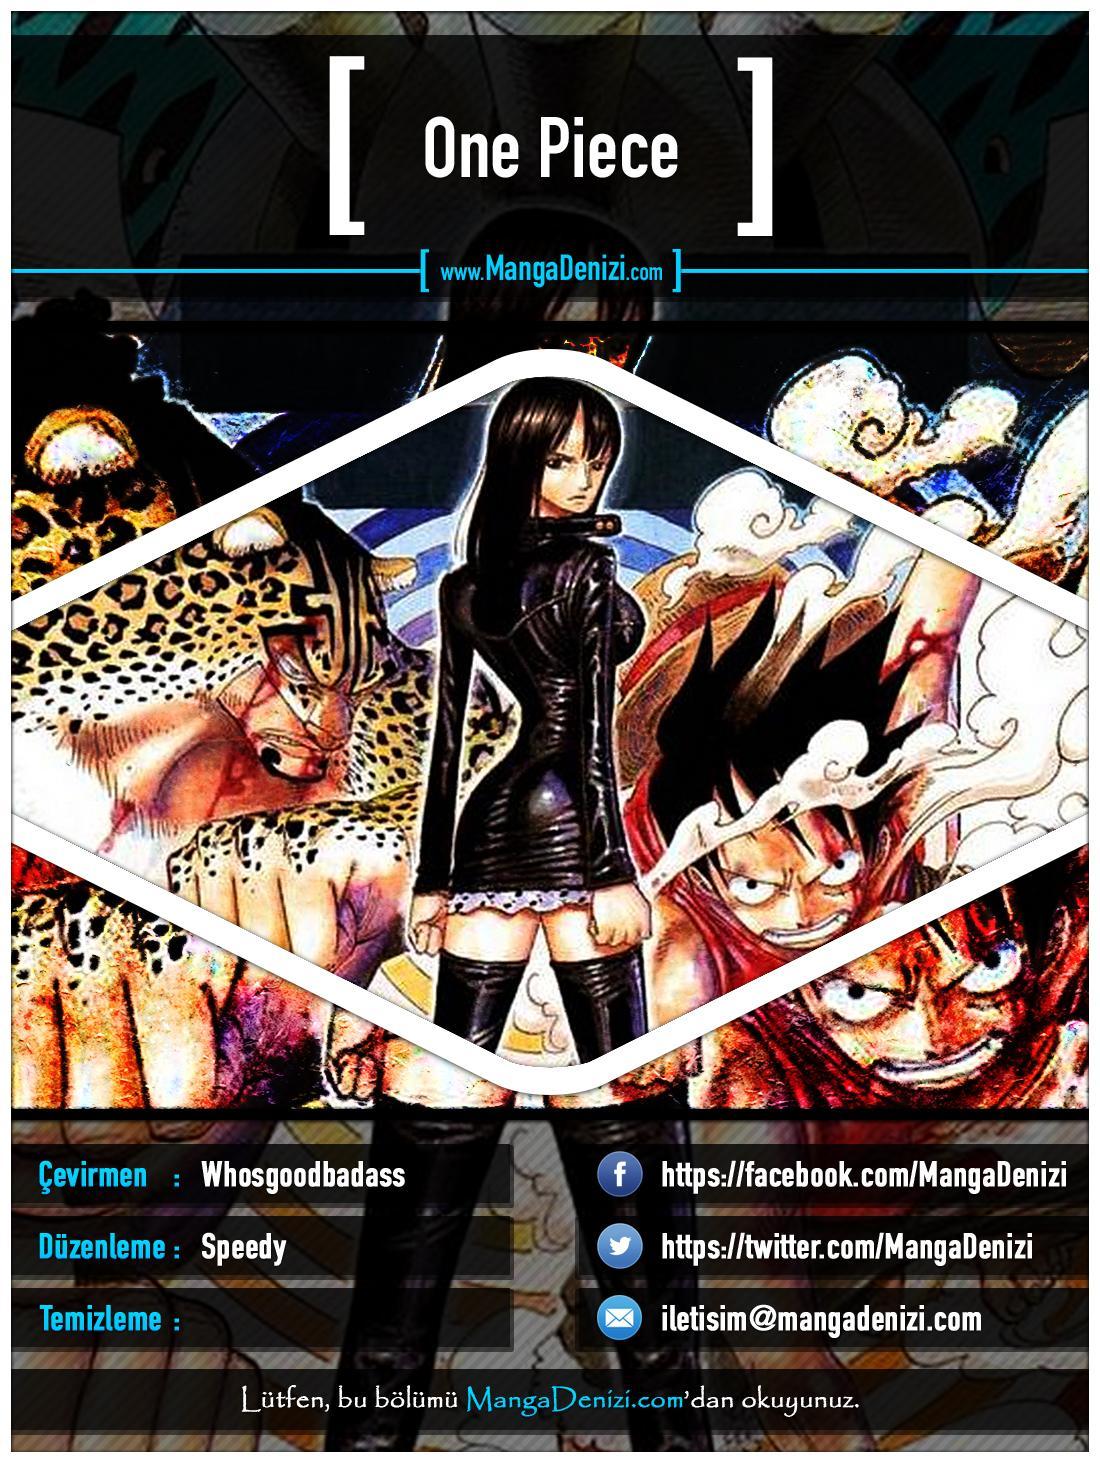 One Piece [Renkli] mangasının 0353 bölümünün 1. sayfasını okuyorsunuz.